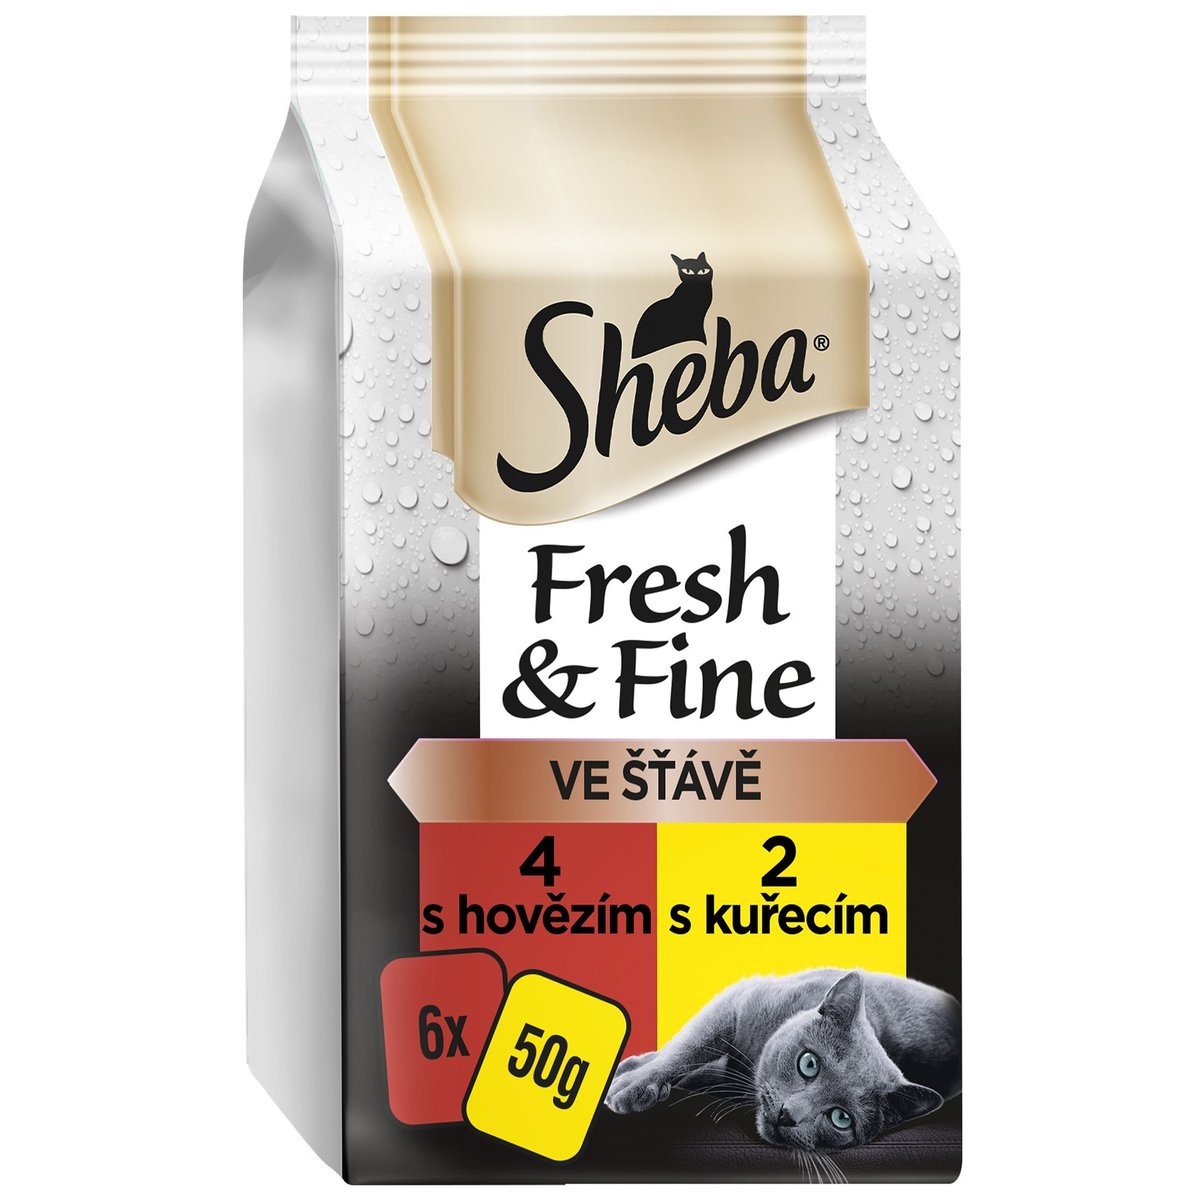 Sheba Fresh & Fine kapsičky kuřecí a hovězí pro dospělé kočky (6×50g)